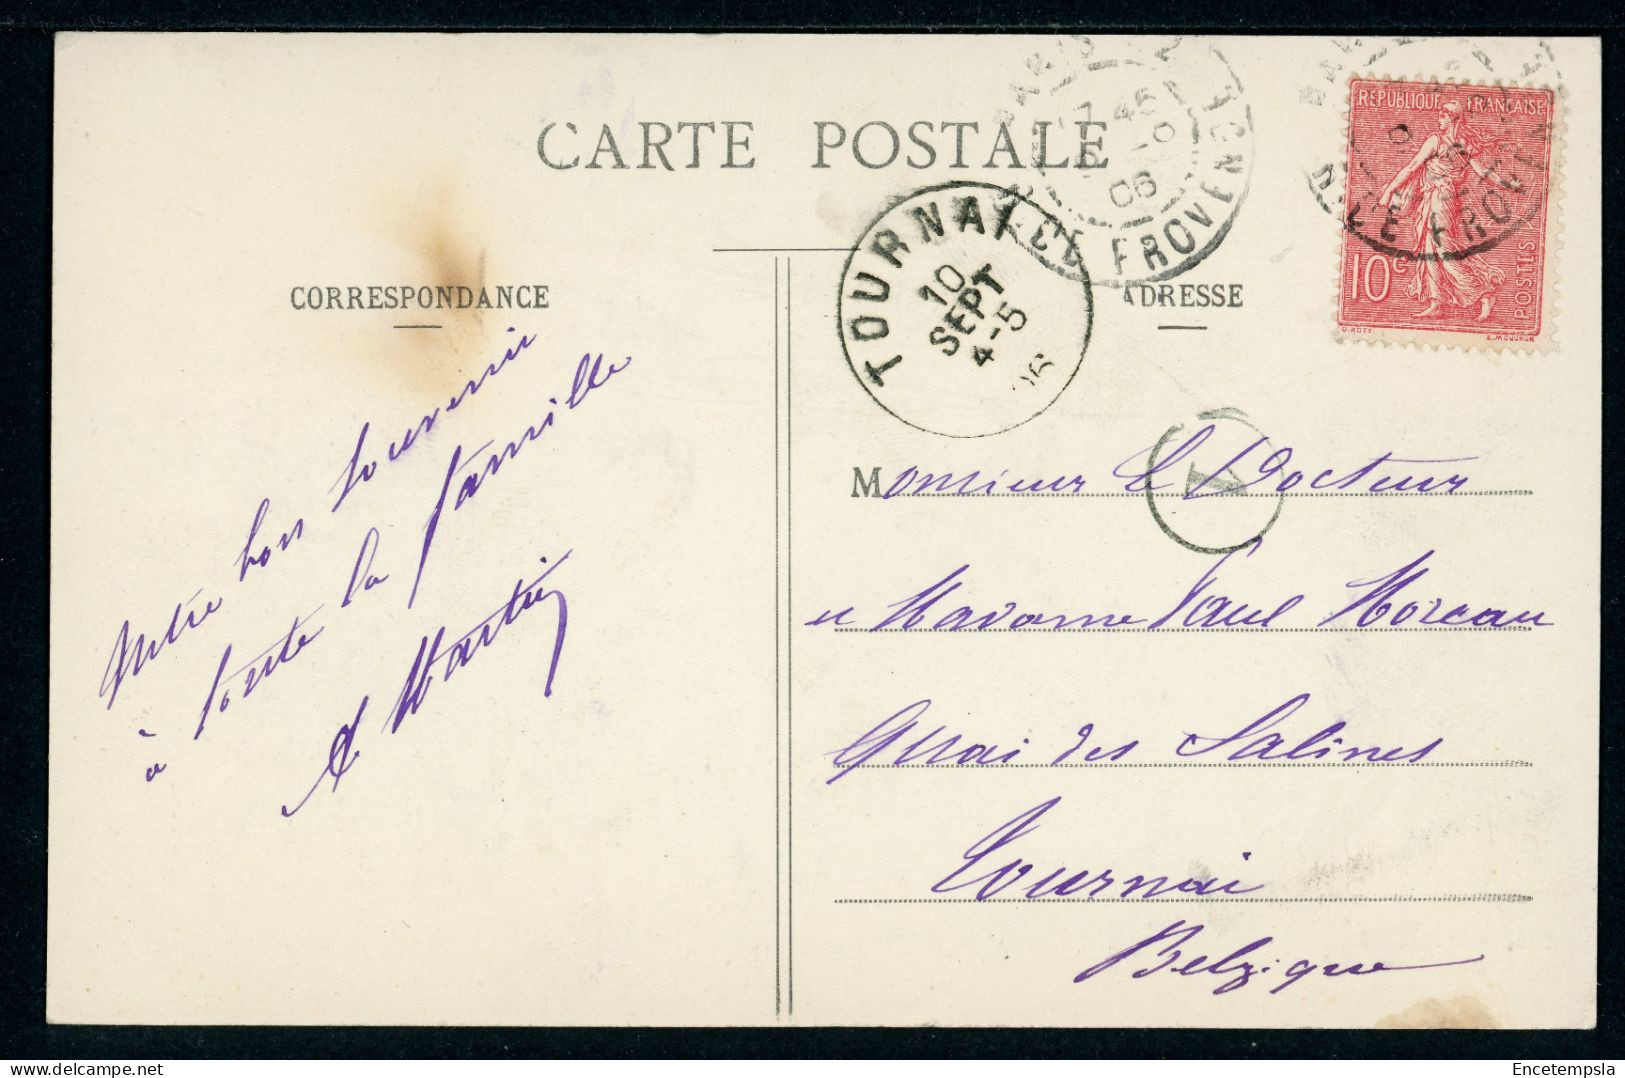 Carte Postale - France - Paris - Boulevard Montmartre (CP24774) - Places, Squares